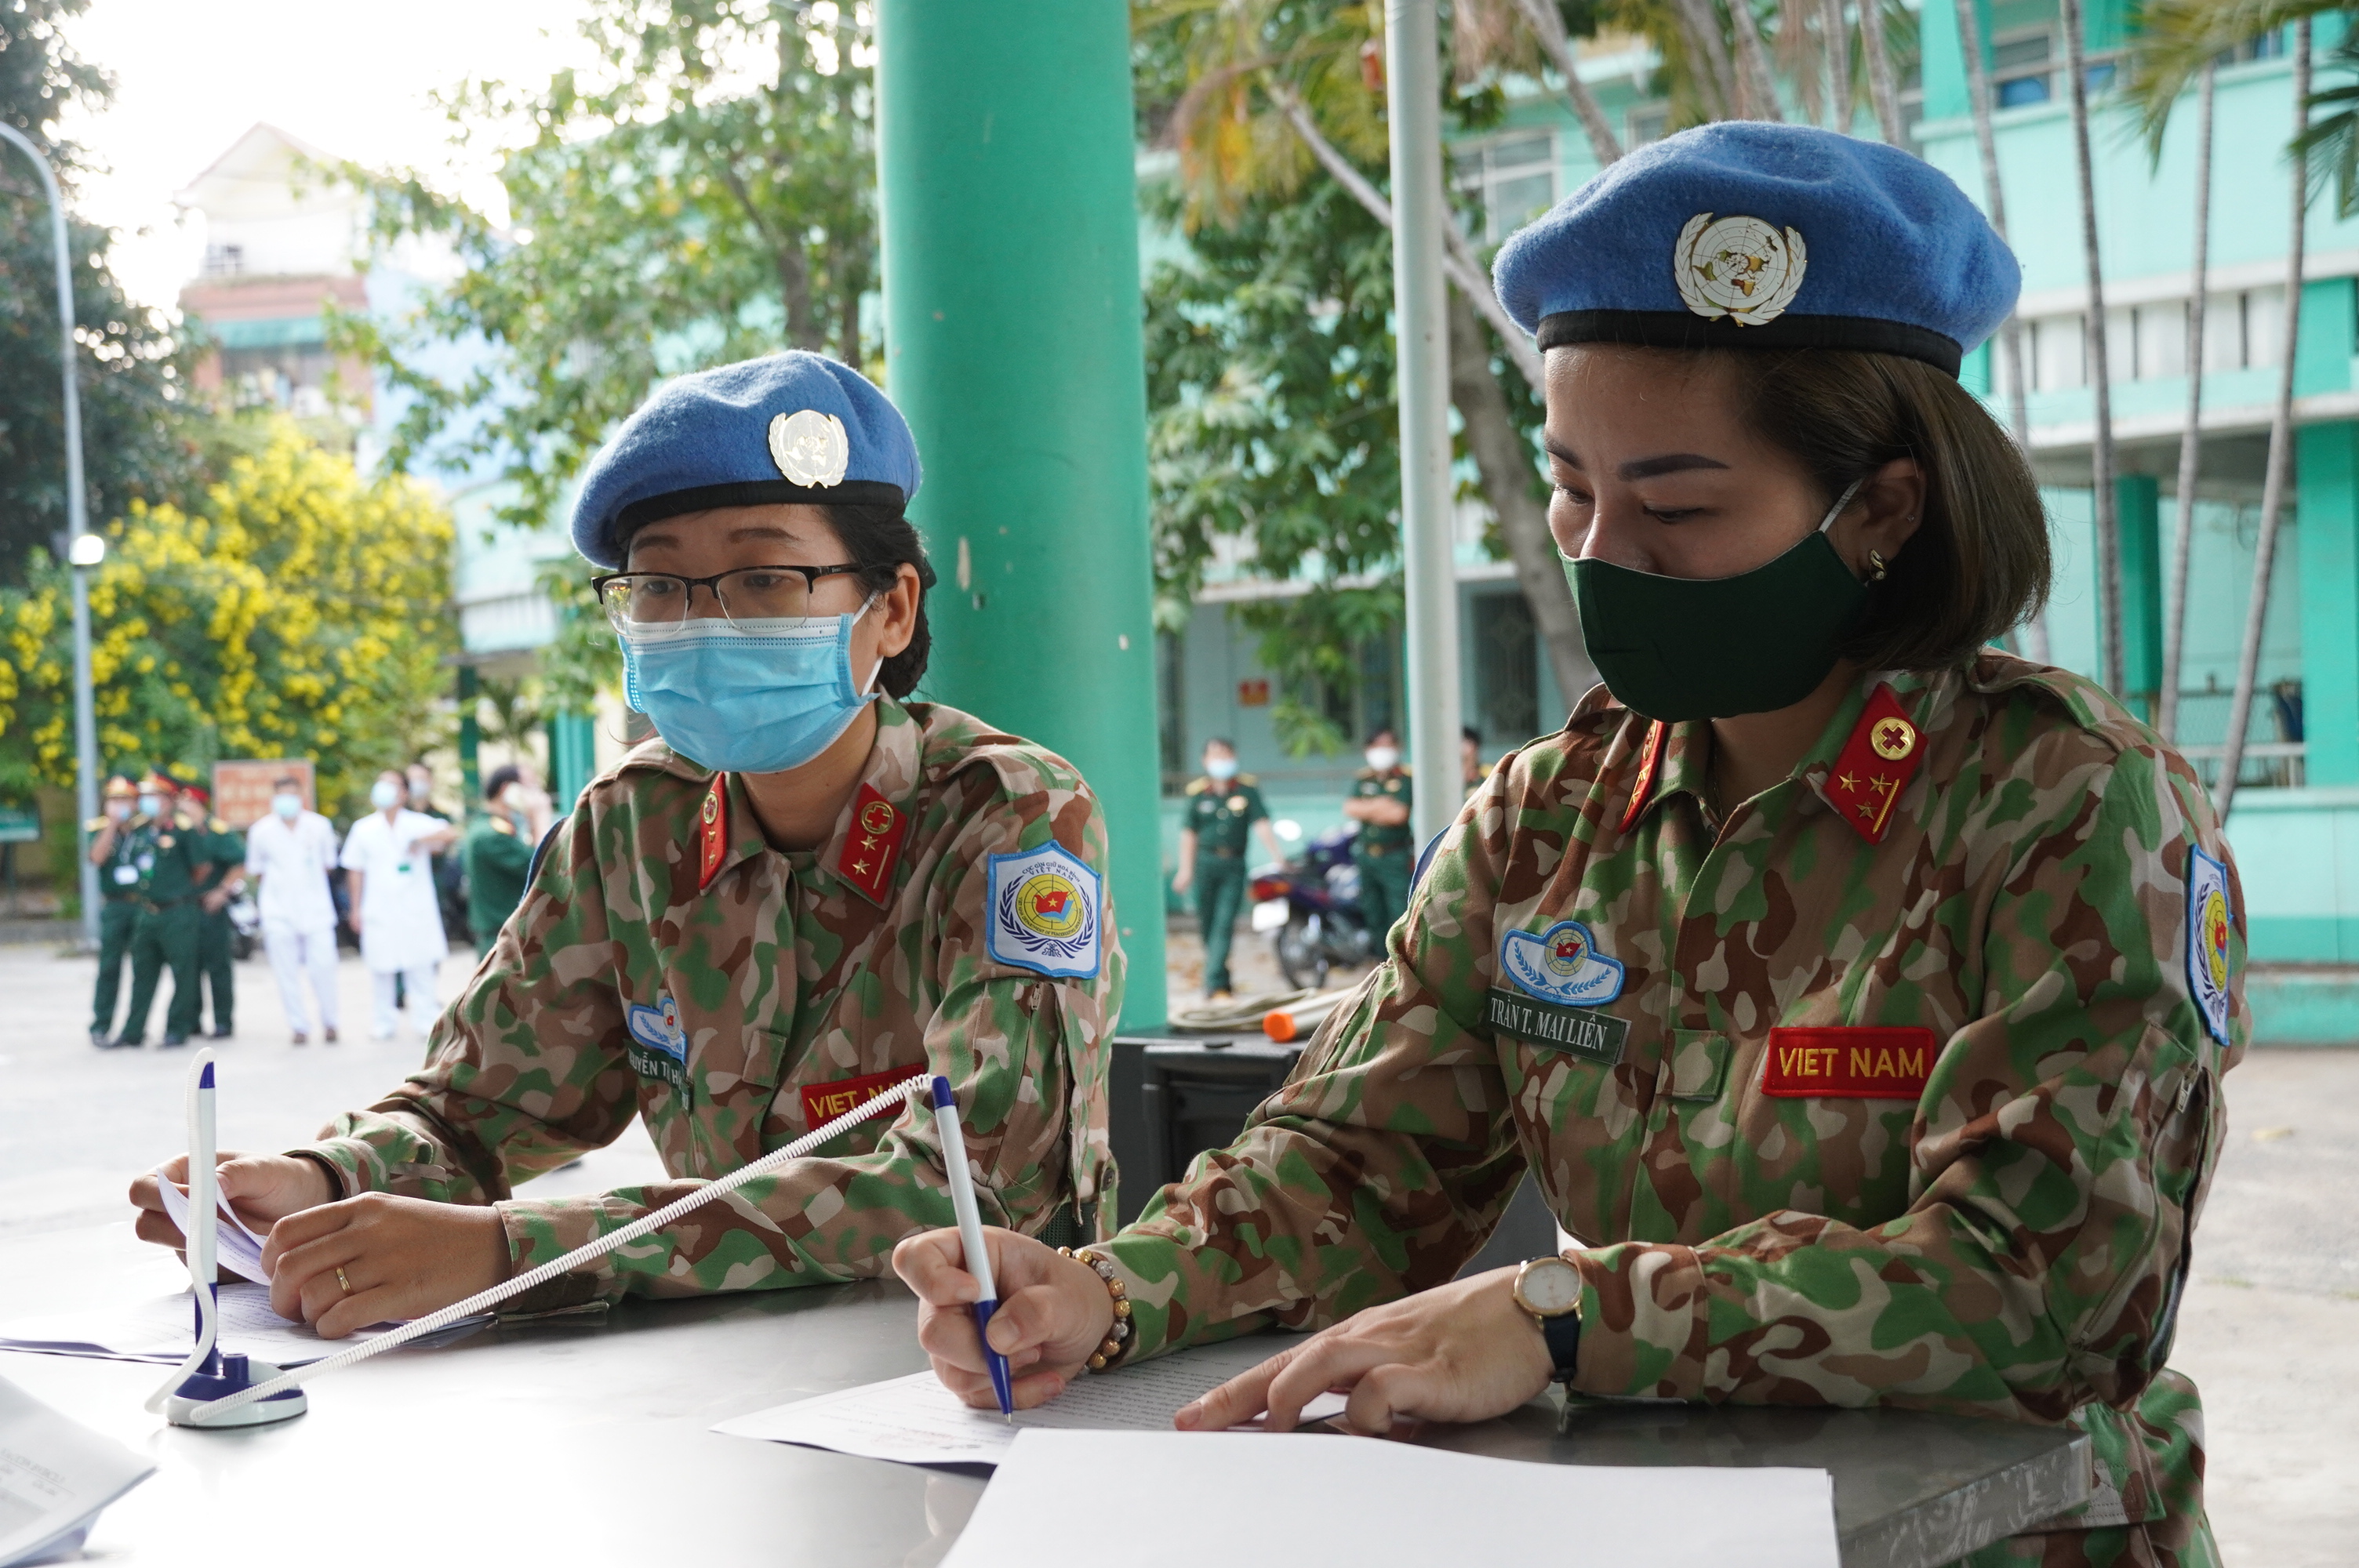 Bệnh viện Quân y 175 tiêm vaccine Covid-19 cho các quân nhân chuẩn bị nhận nhiệm vụ tại Nam Sudan - Ảnh 1.